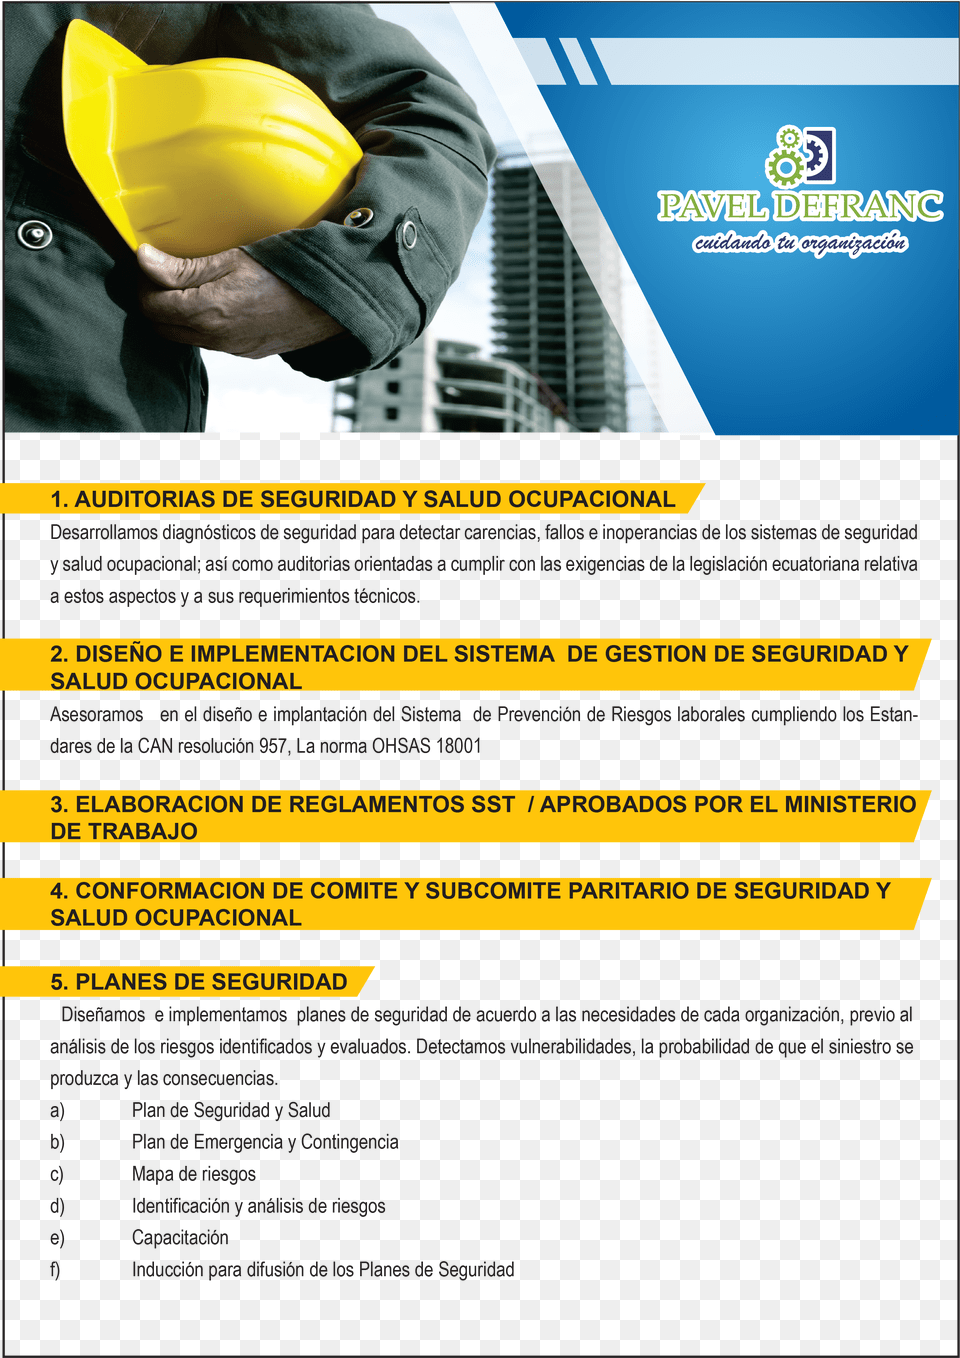 Seguridad Industrial Repertorio Di Piani Di Sicurezza E Coordinamento Con, Advertisement, Clothing, Hardhat, Helmet Png Image